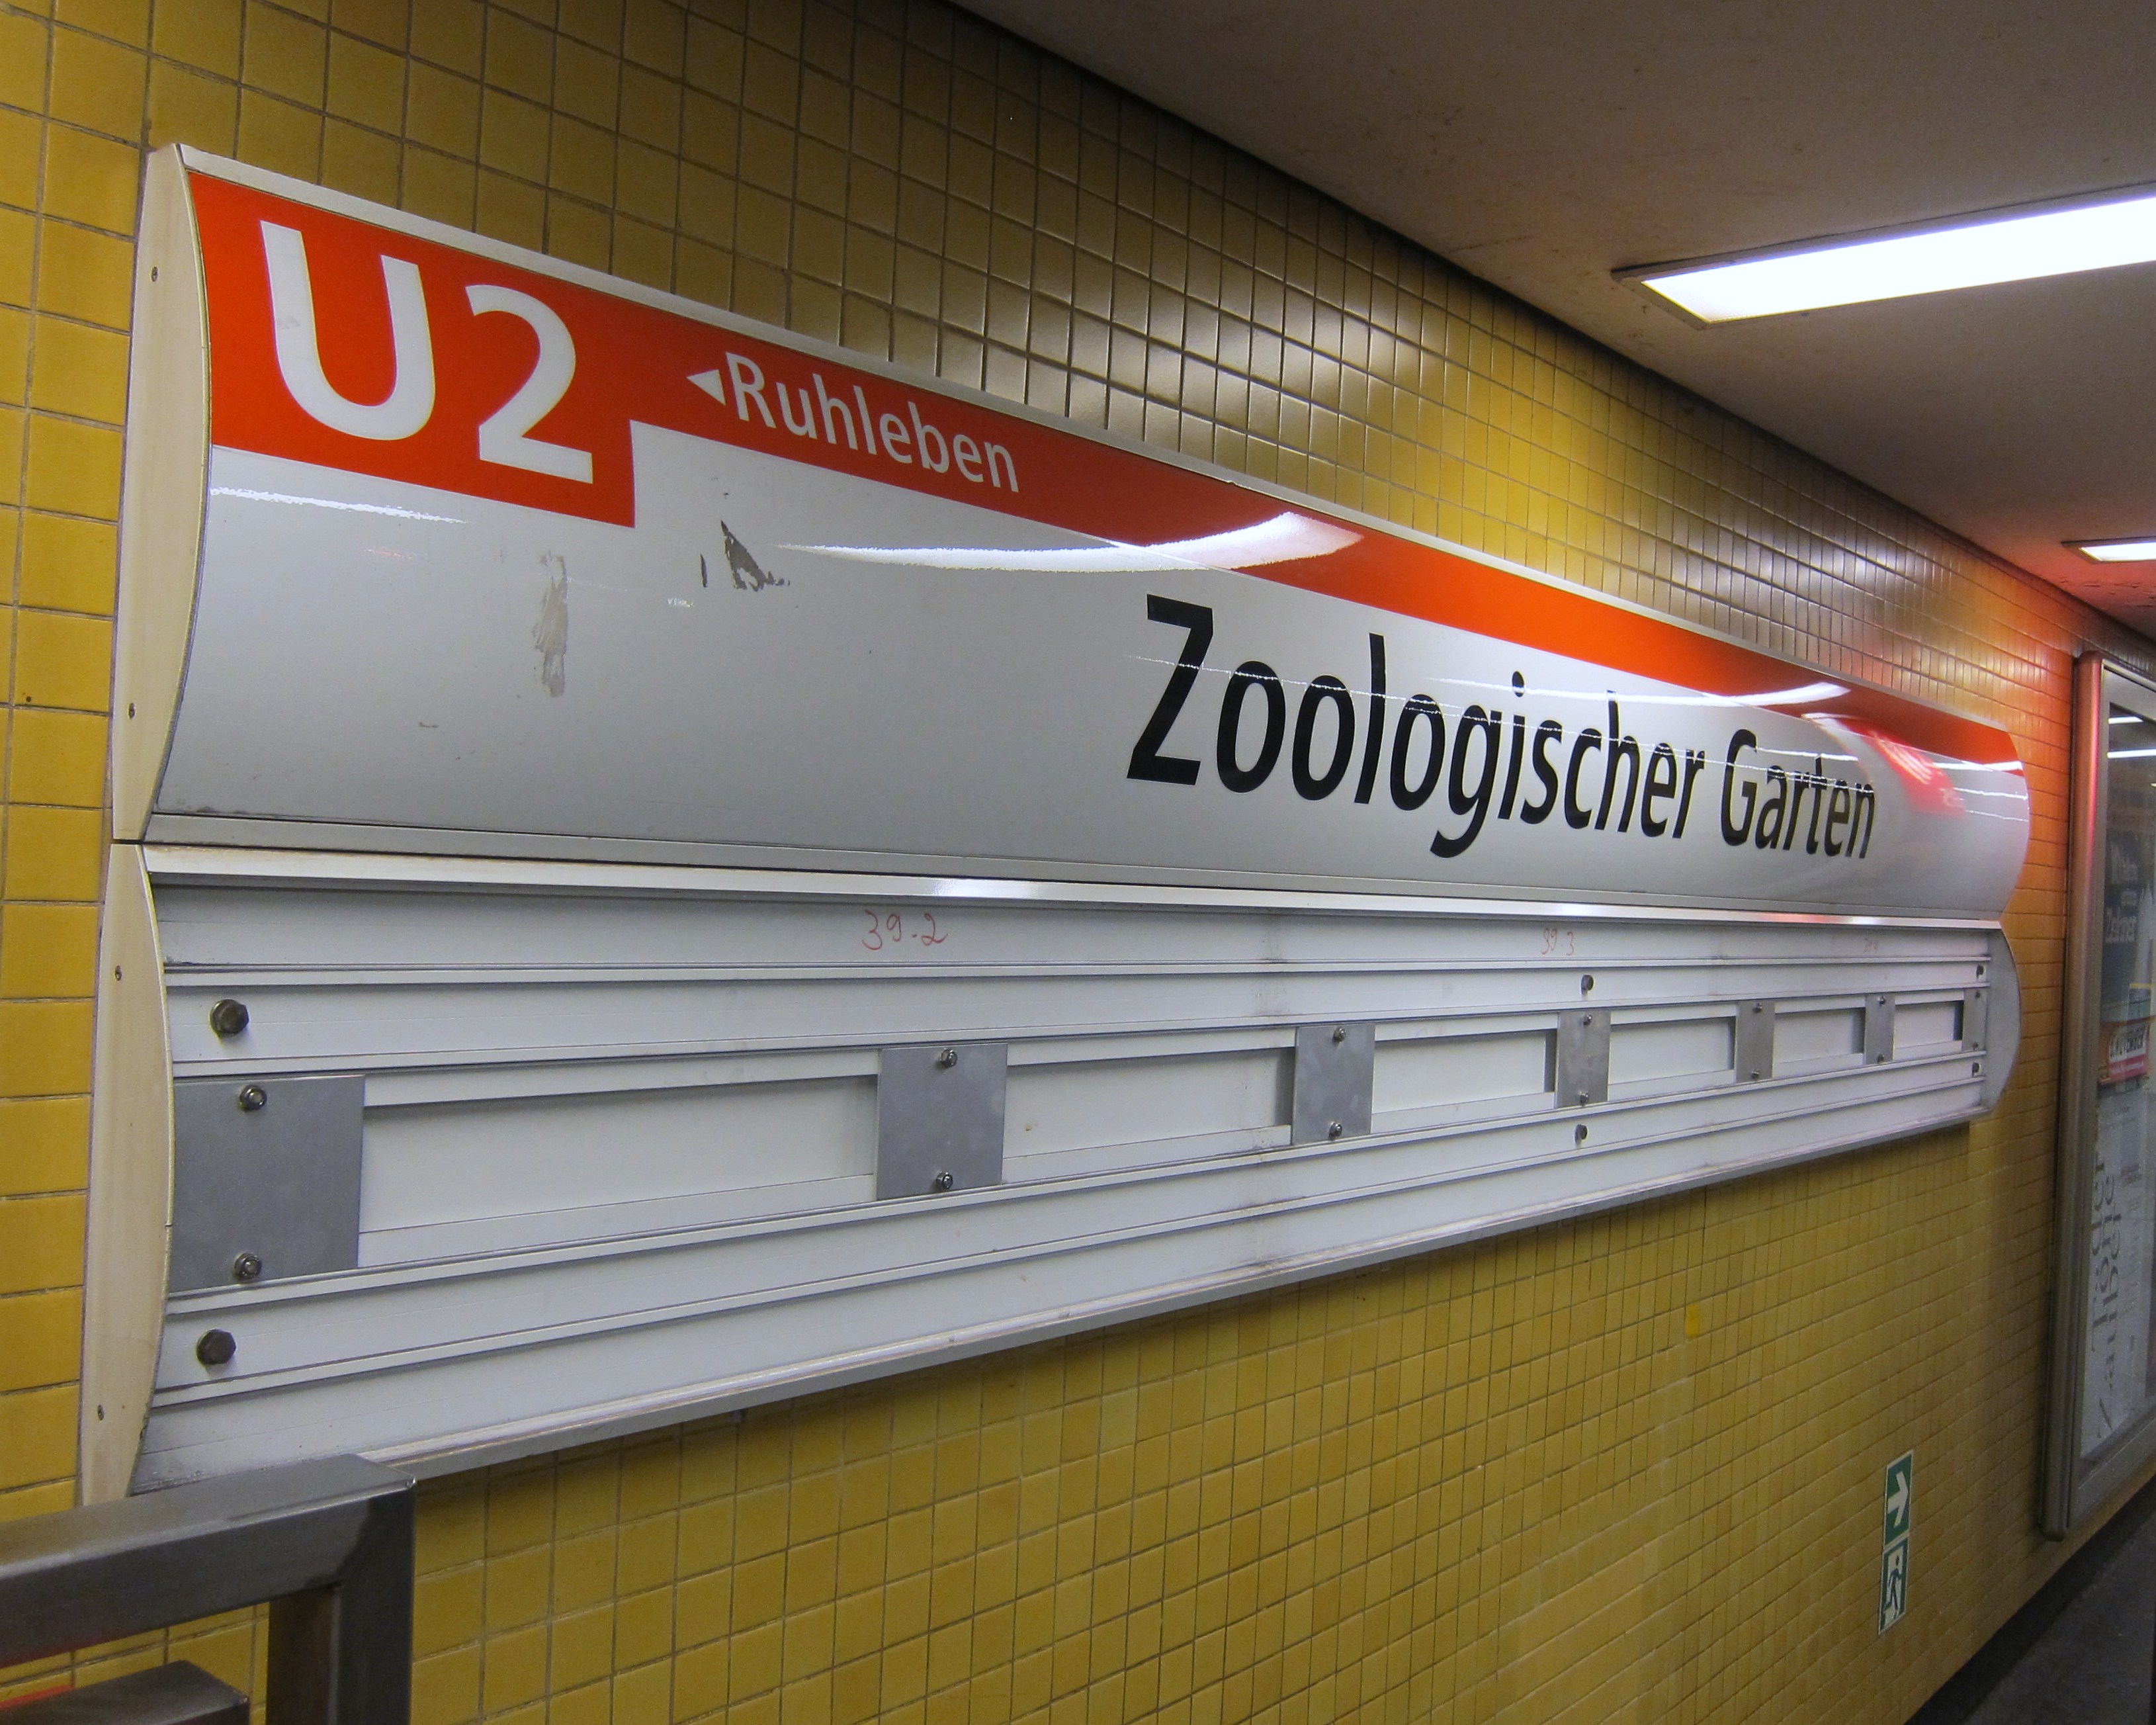 u2-zoo-station